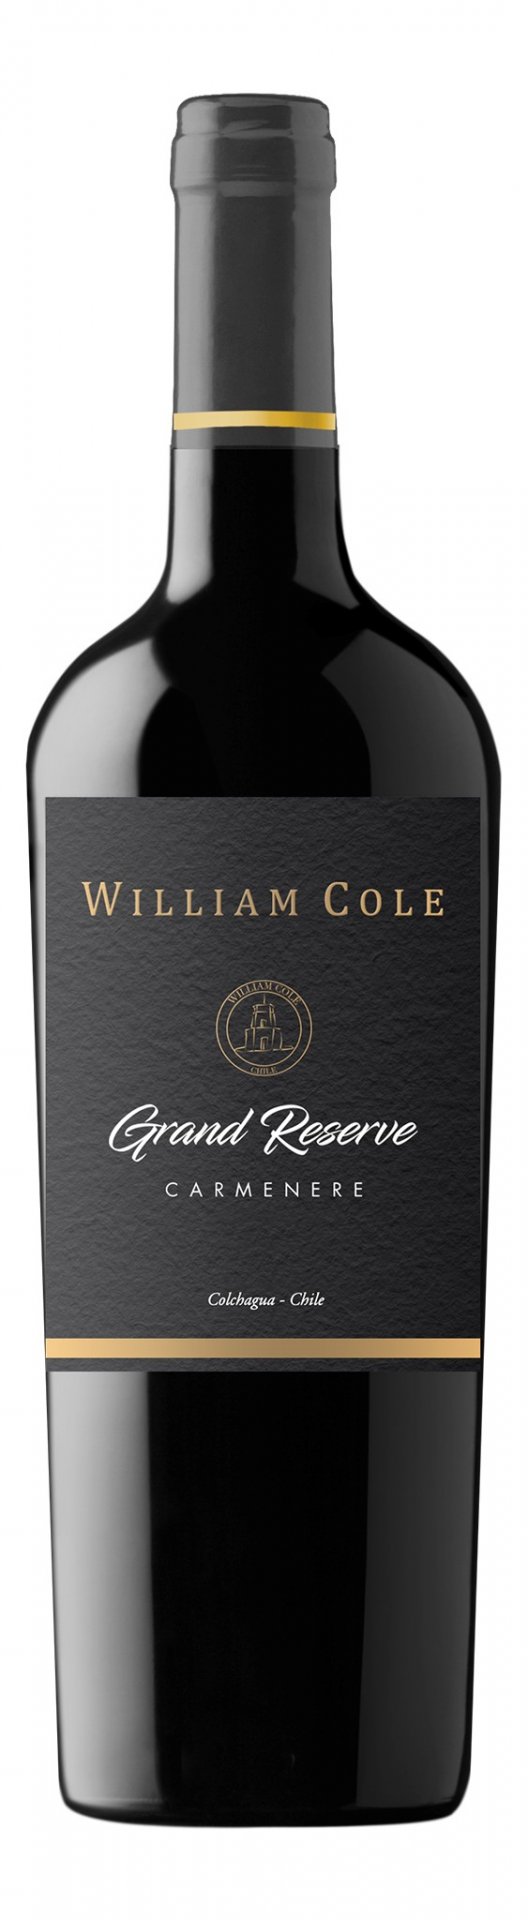 William Cole Grand Reserve Carmenere